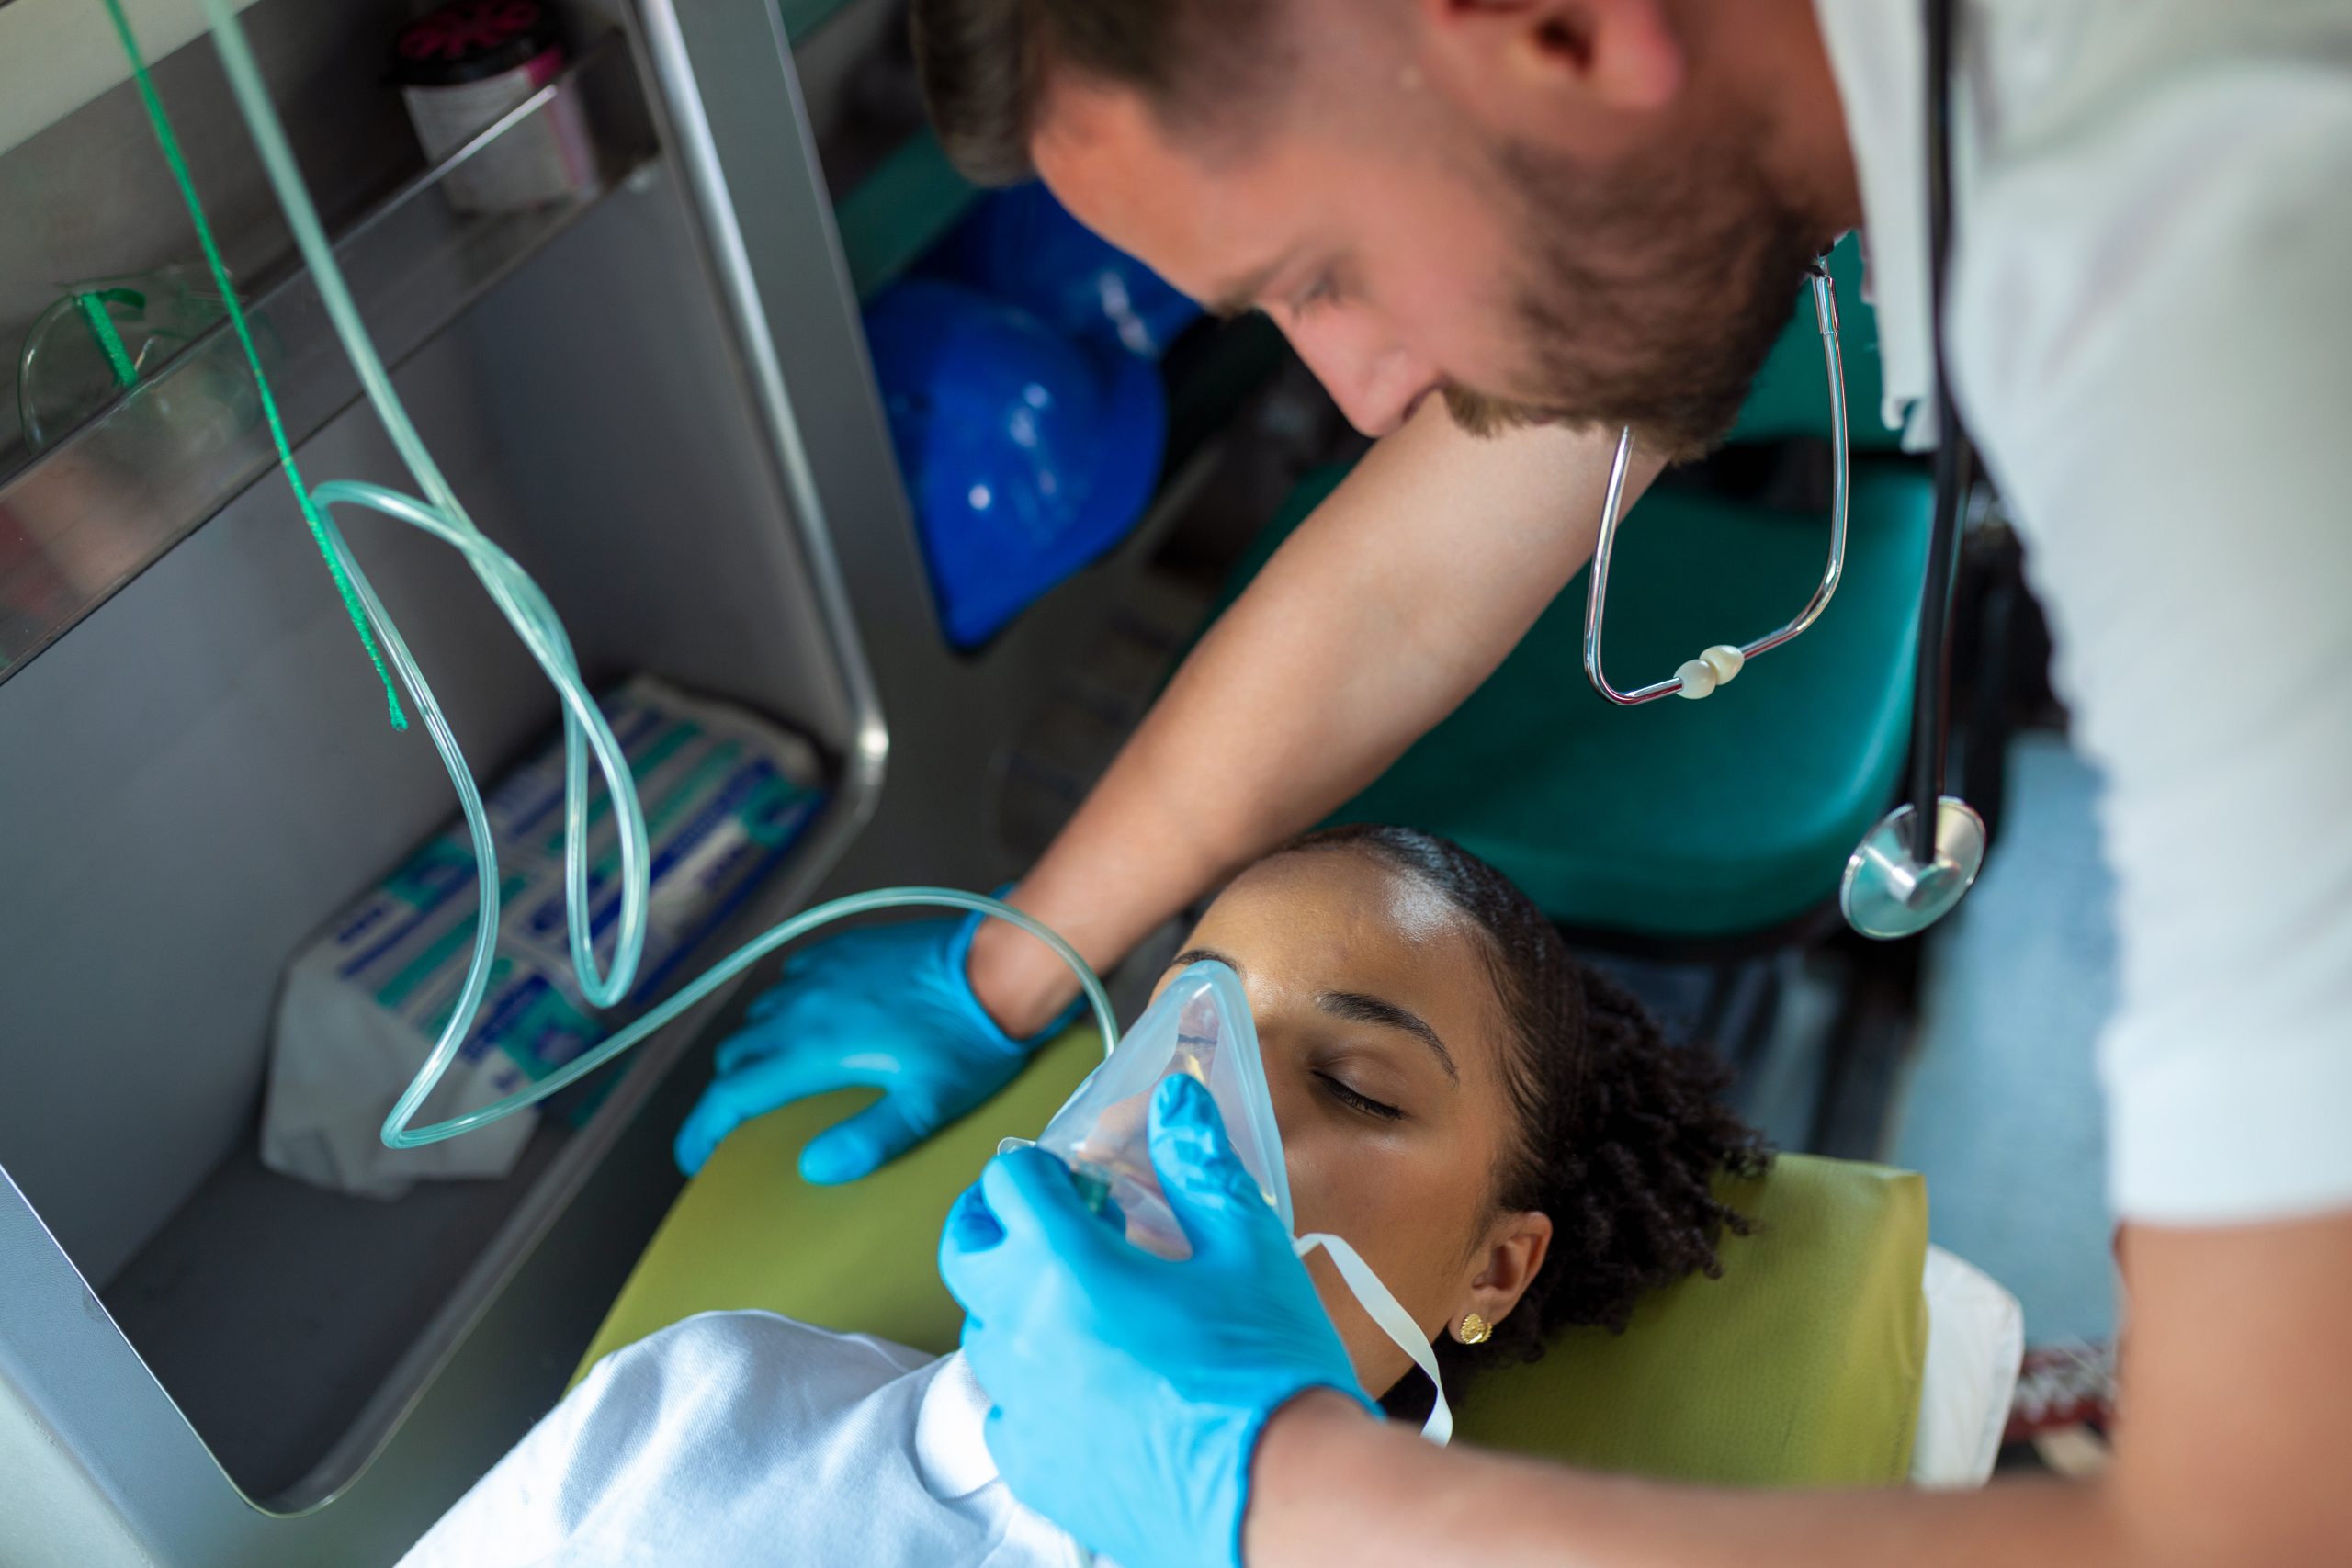 Enfermeiro de urgência e emergência ajuda paciente a respirar com máscara de oxigênio